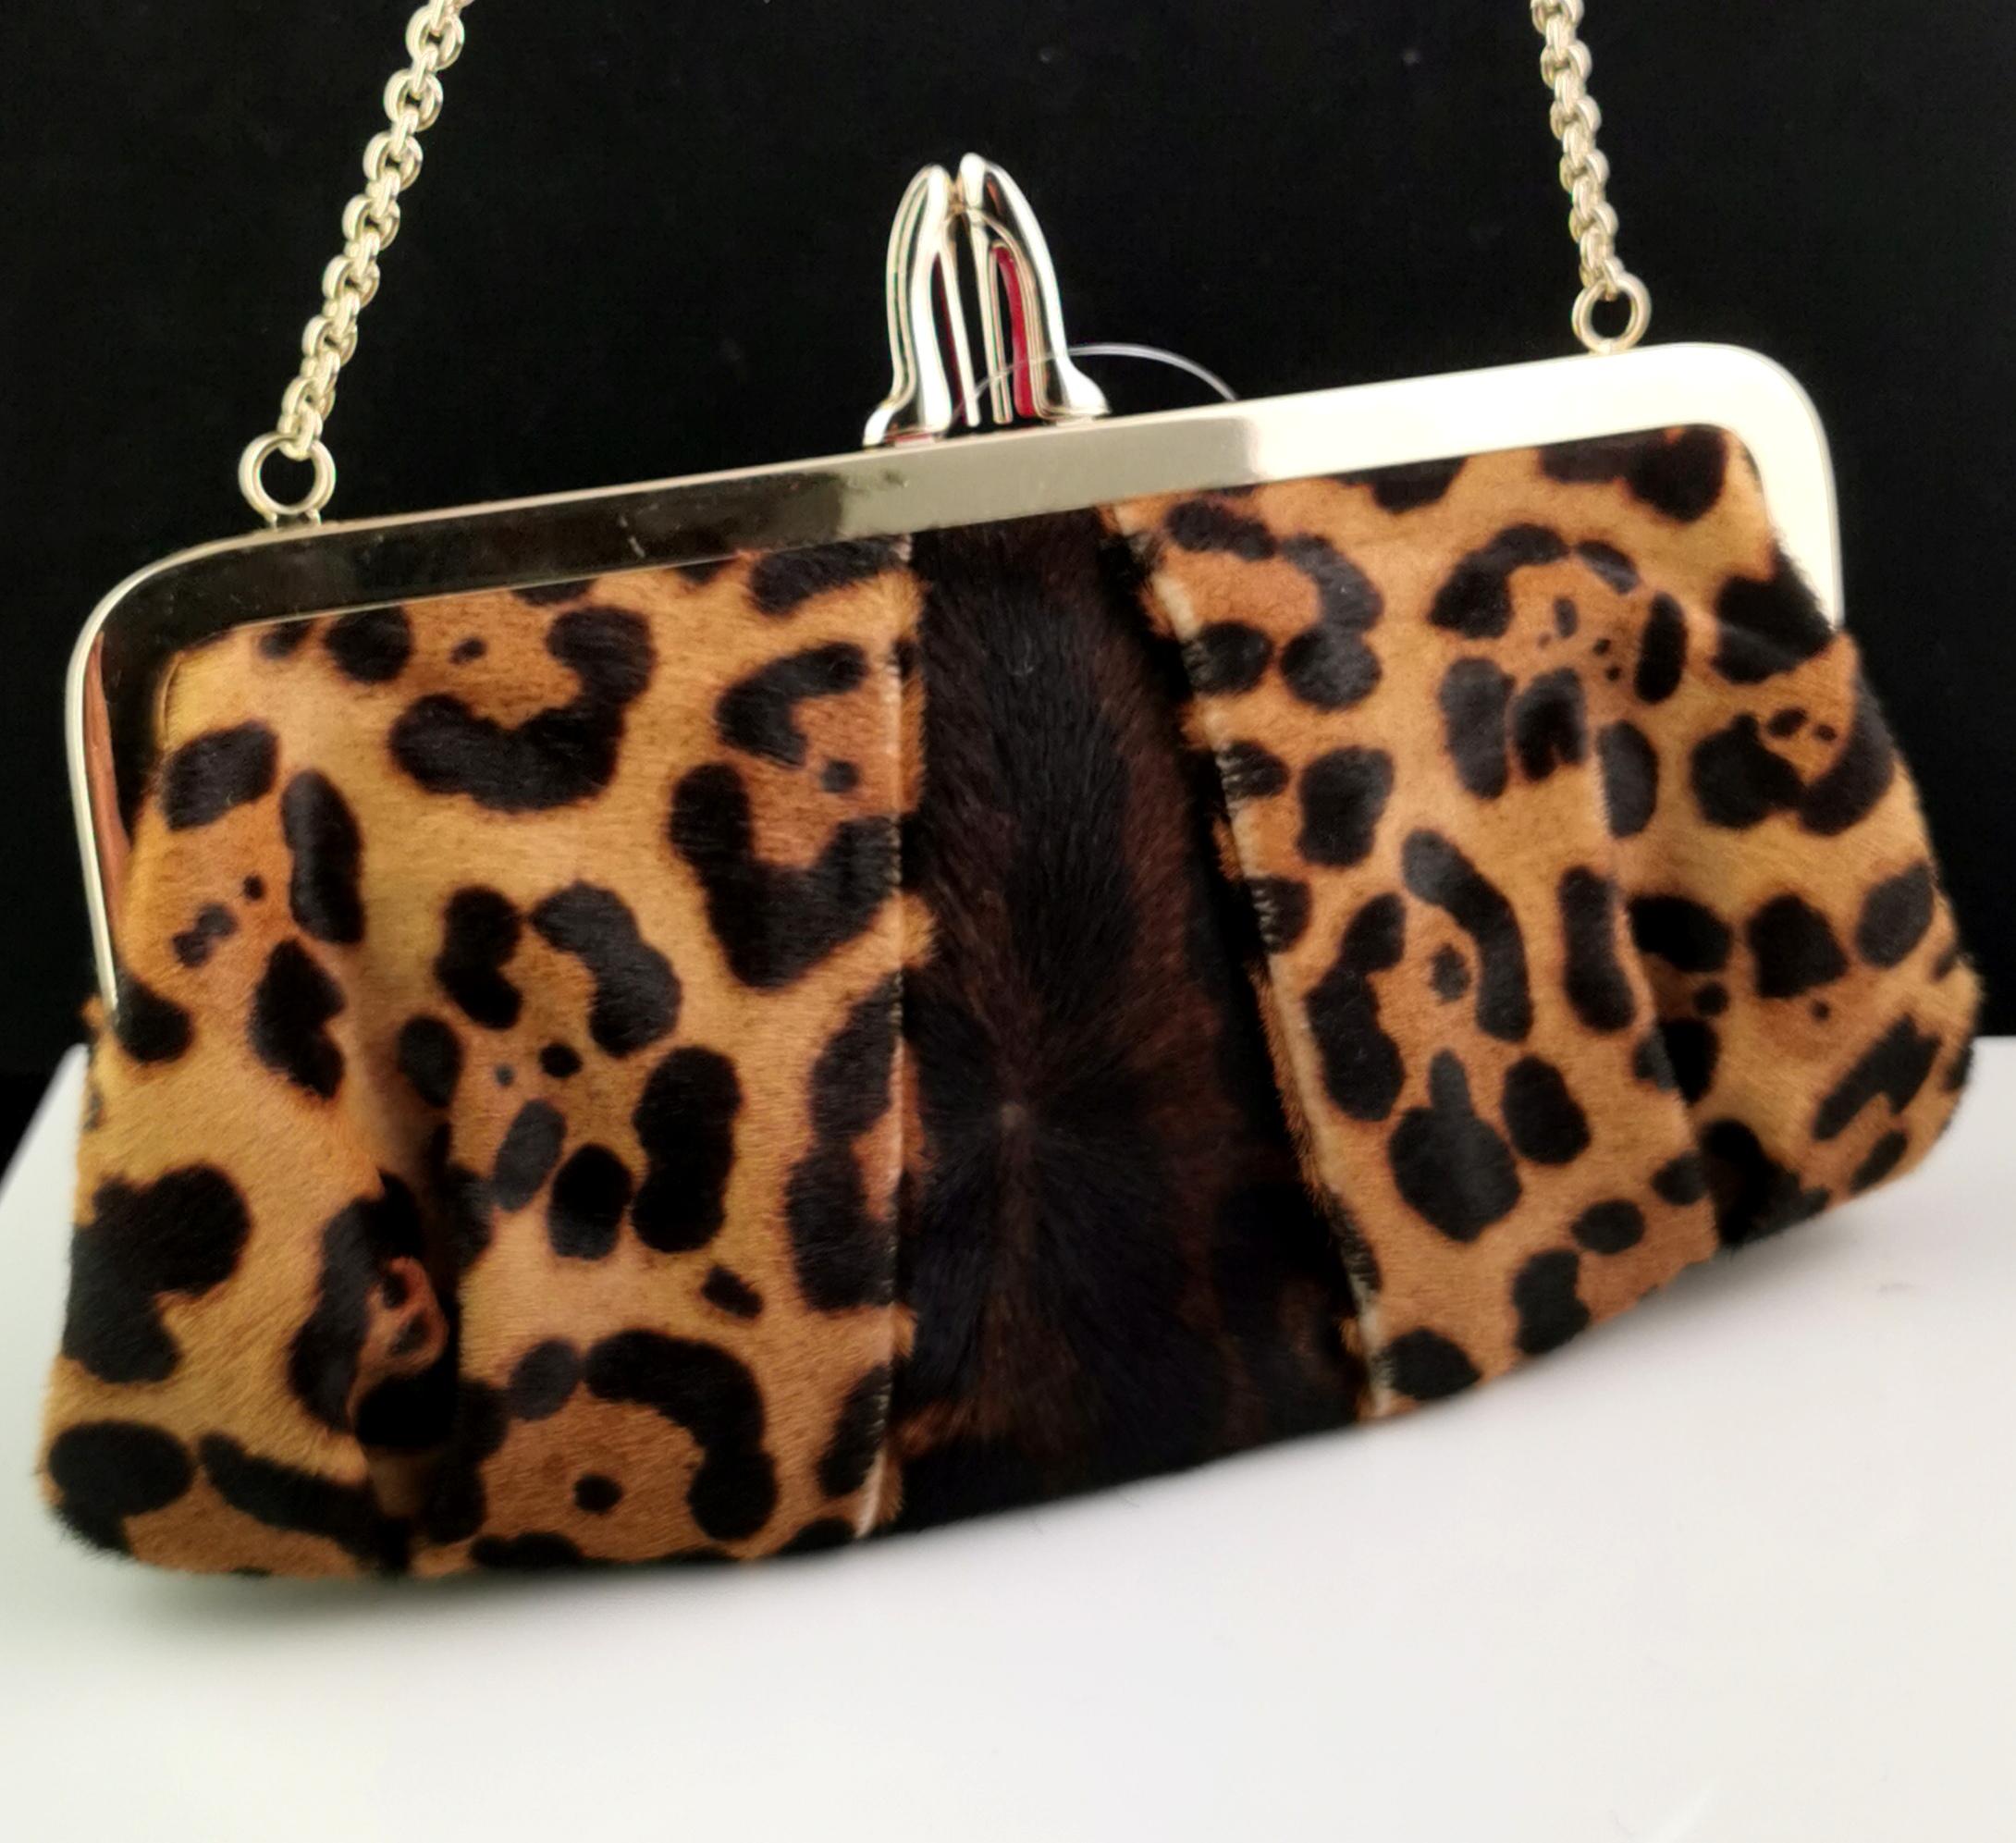 Un sac à main vintage Christian Louboutin, Loubi Lula imprimé léopard, pochette en peau de poney.

Il présente un ravissant imprimé léopard avec des coins plissés et un talon haut emblématique à fermoir kiss lock avec les mémorables semelles